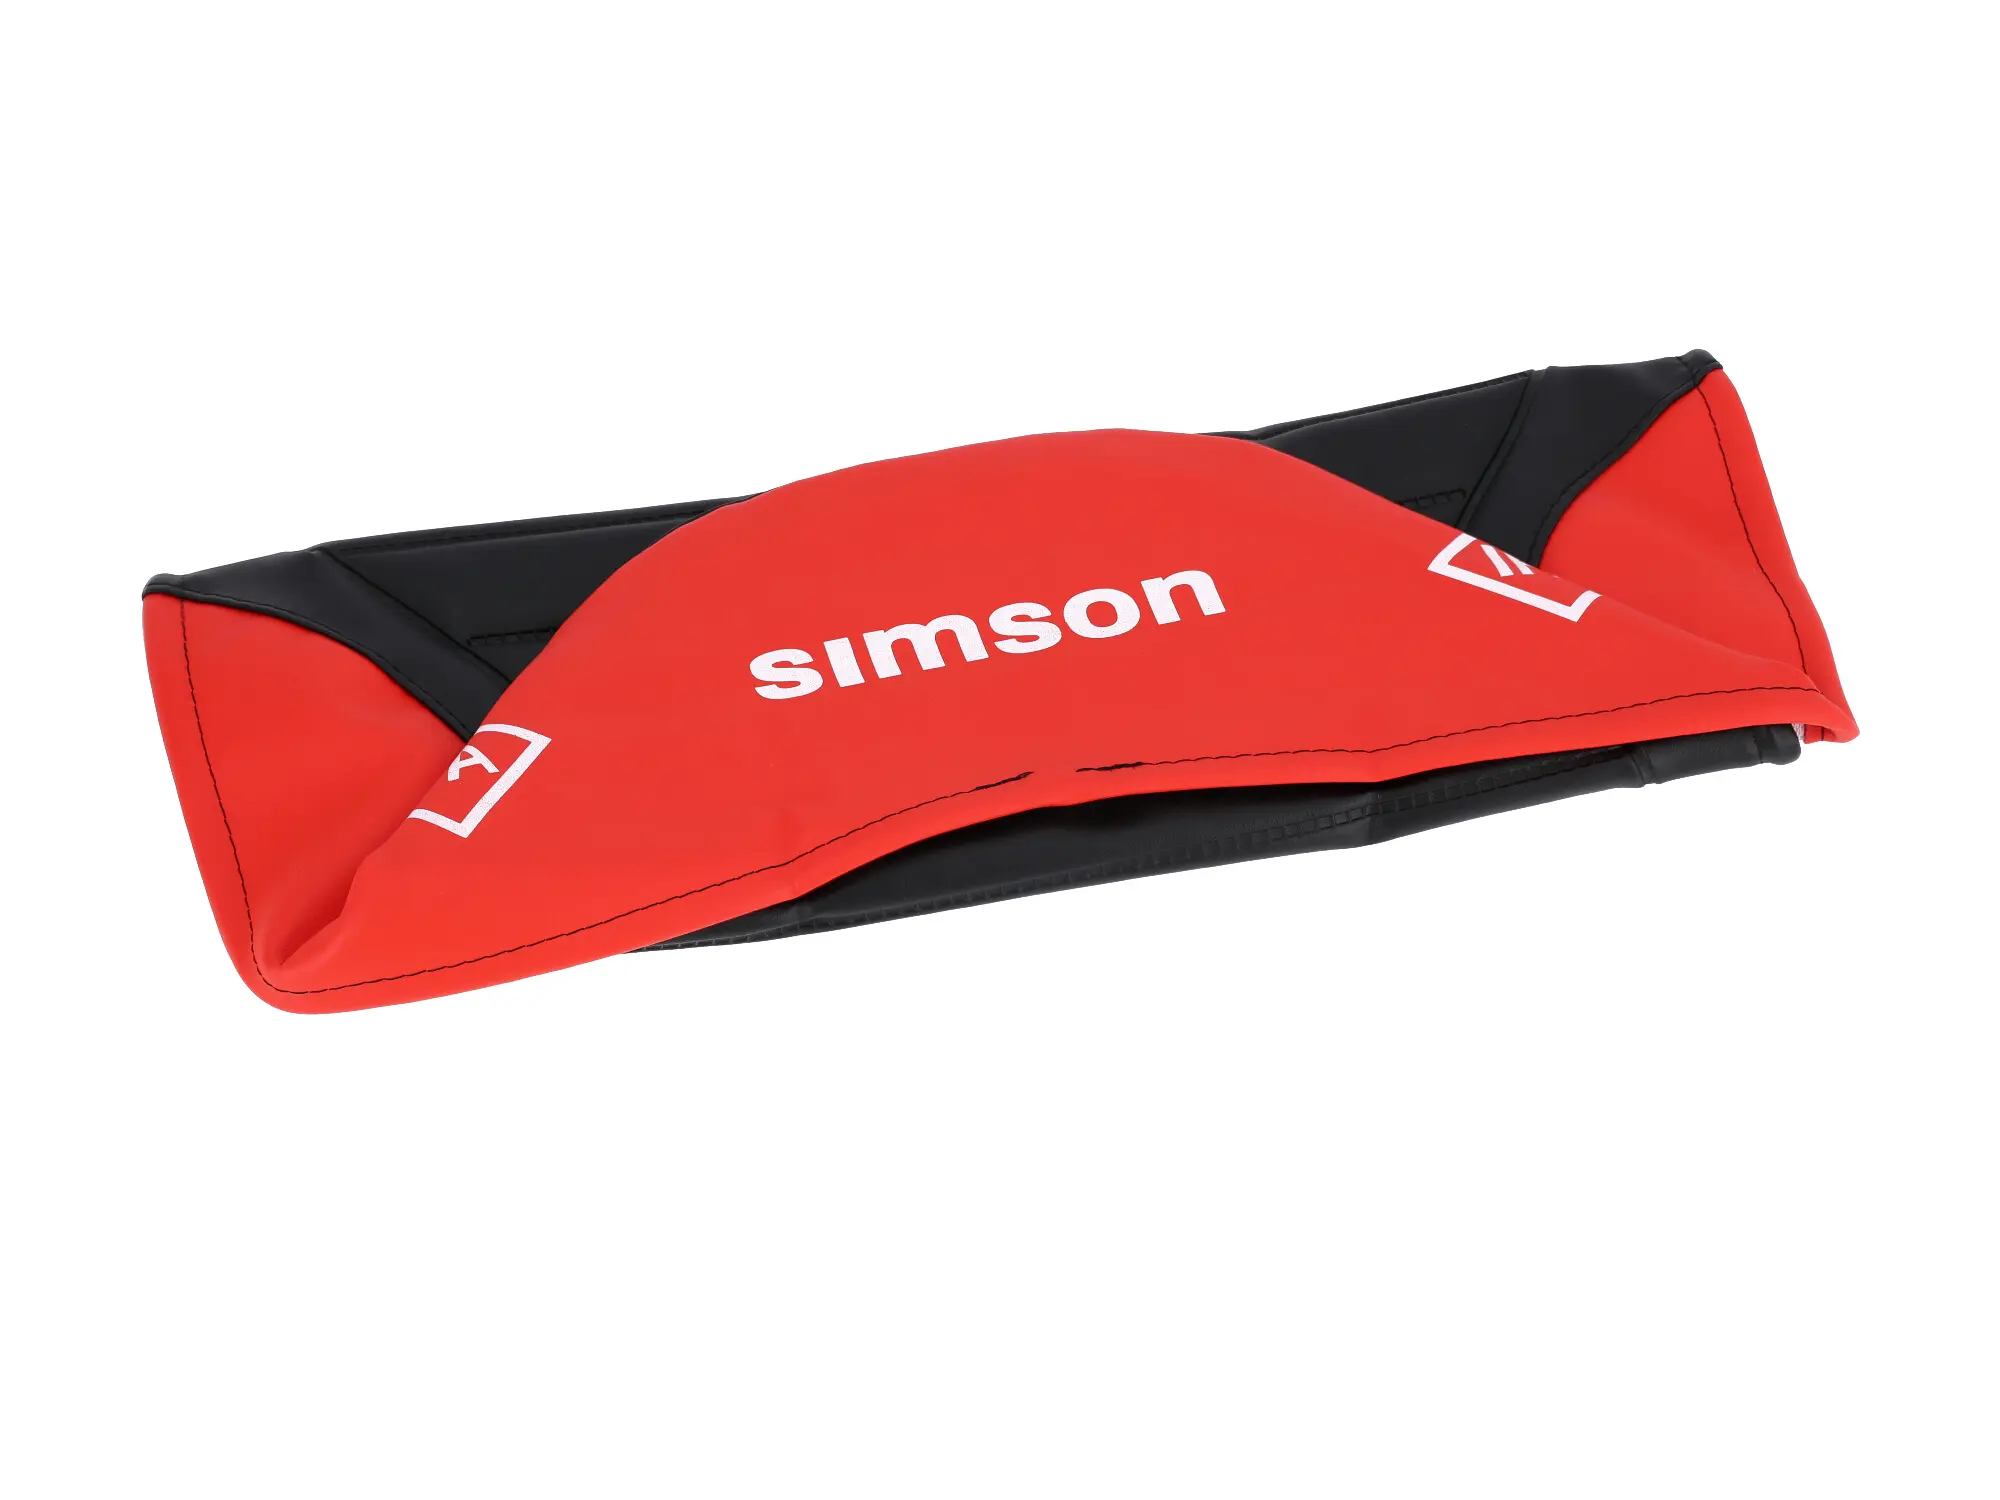 Sitzbezug strukturiert, schwarz/rot für Endurositzbank mit SIMSON-Schriftzug - Simson S50, S51, S70 Enduro, Art.-Nr.: 10002831 - Bild 1